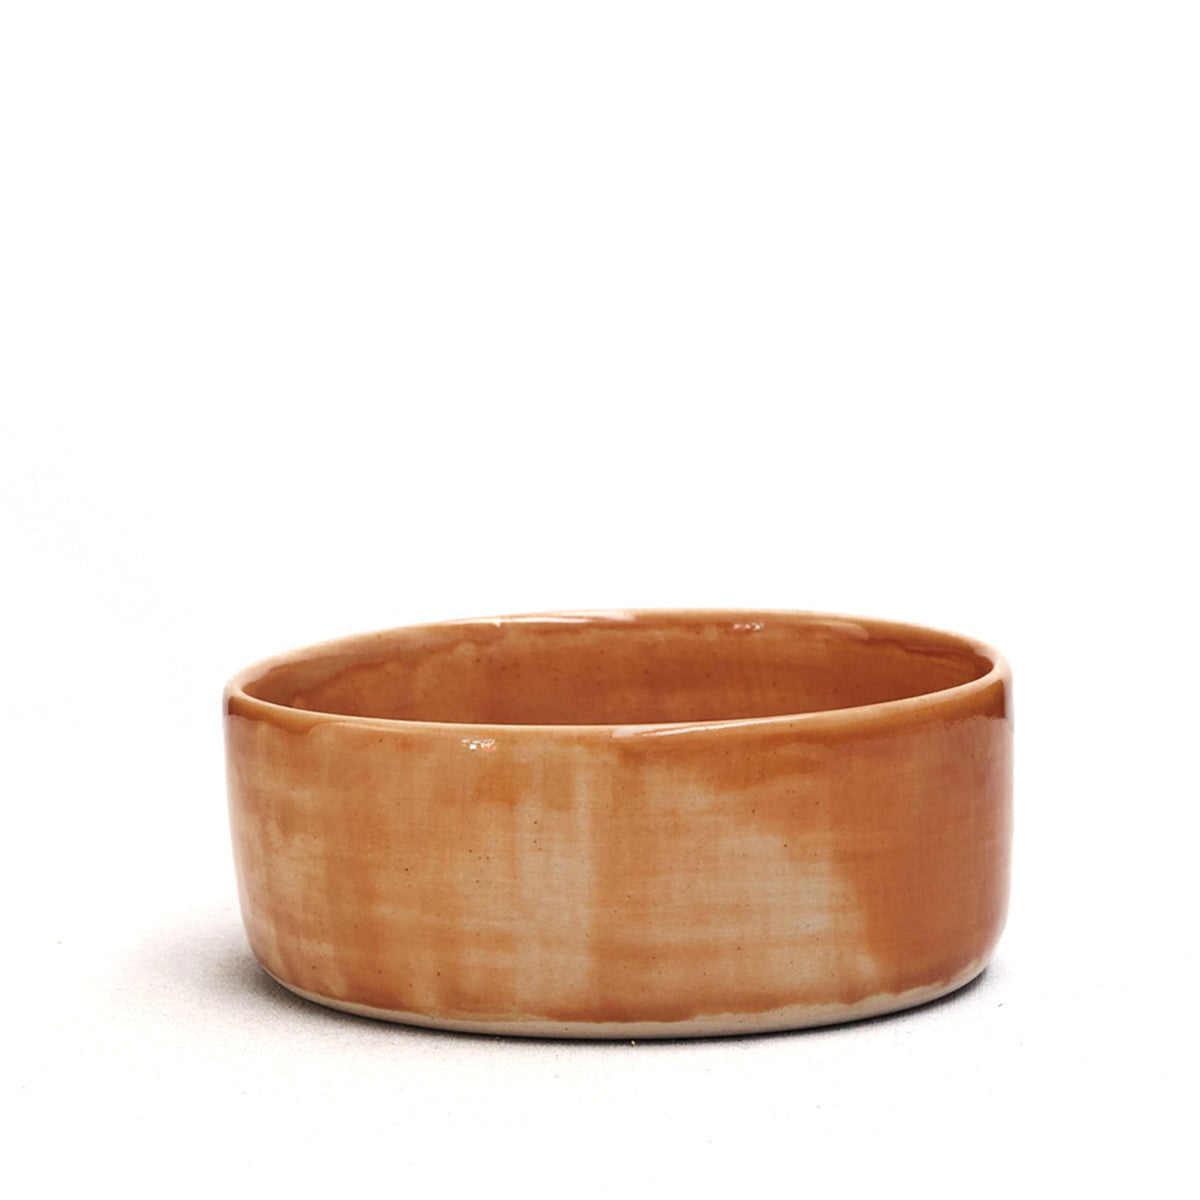 Amber keramieken bowl